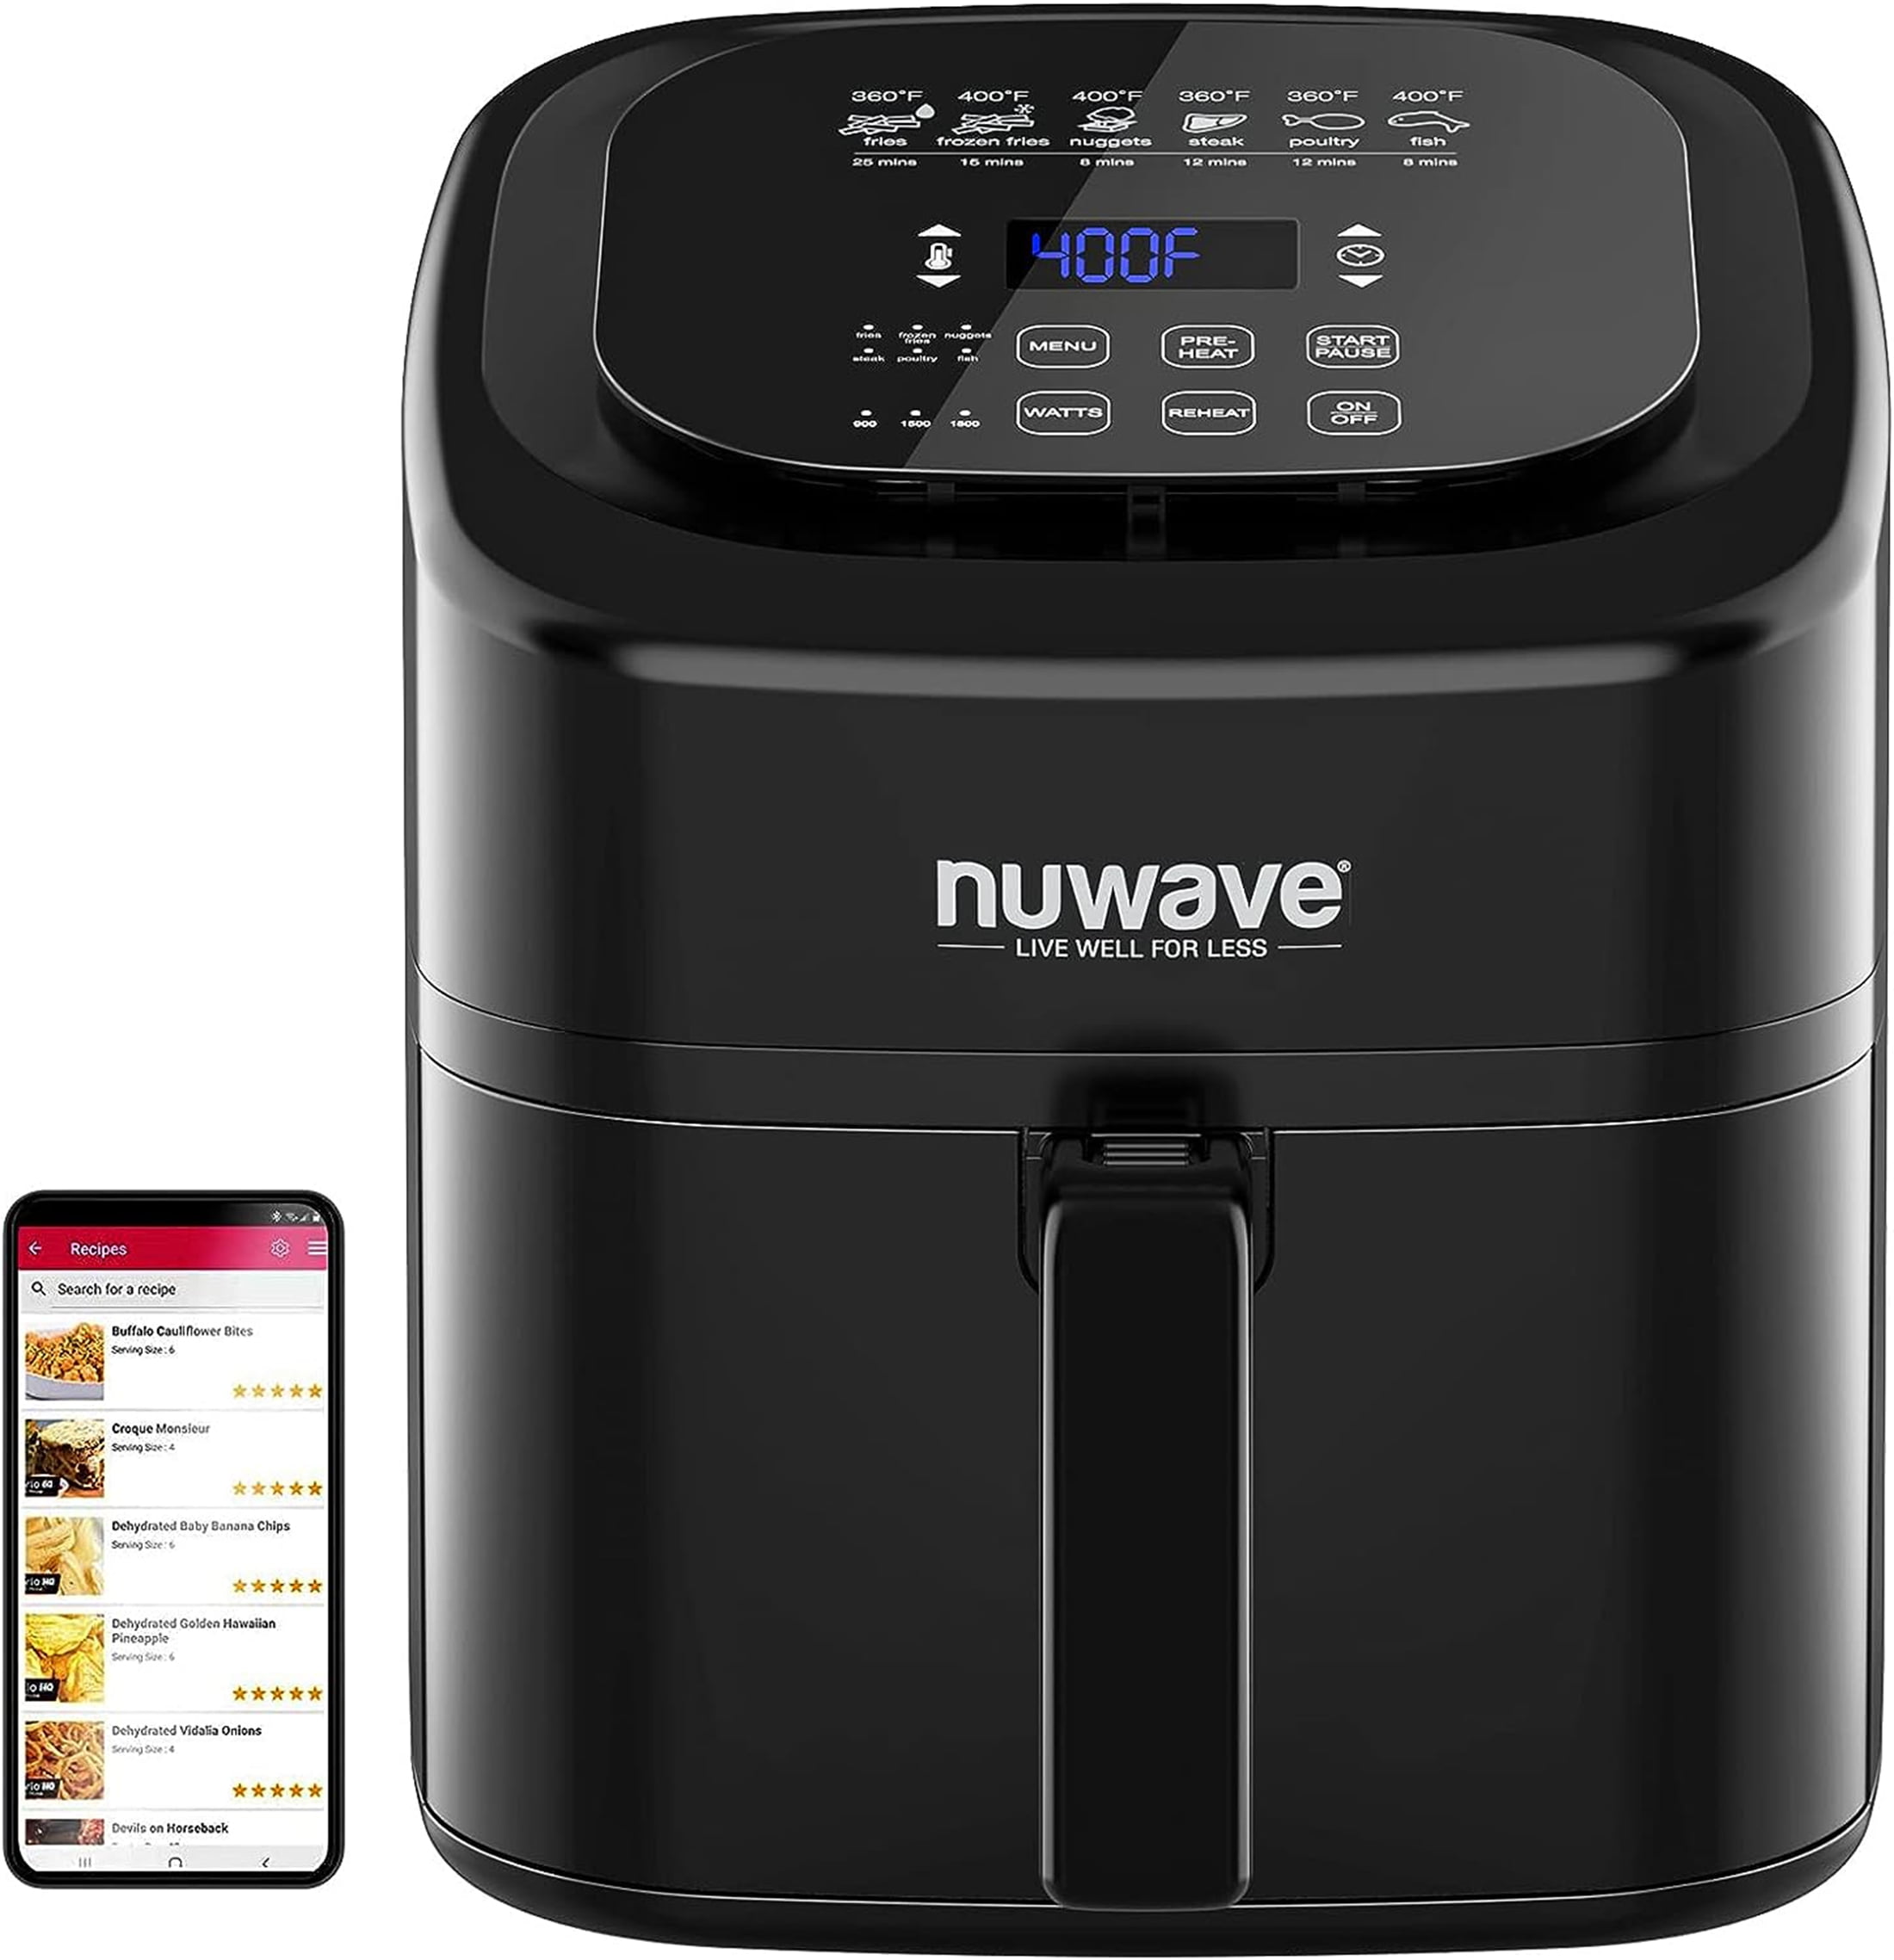 NUWAVE BRIO 6-Quart Digital Air Fryer with one-touch digital controls